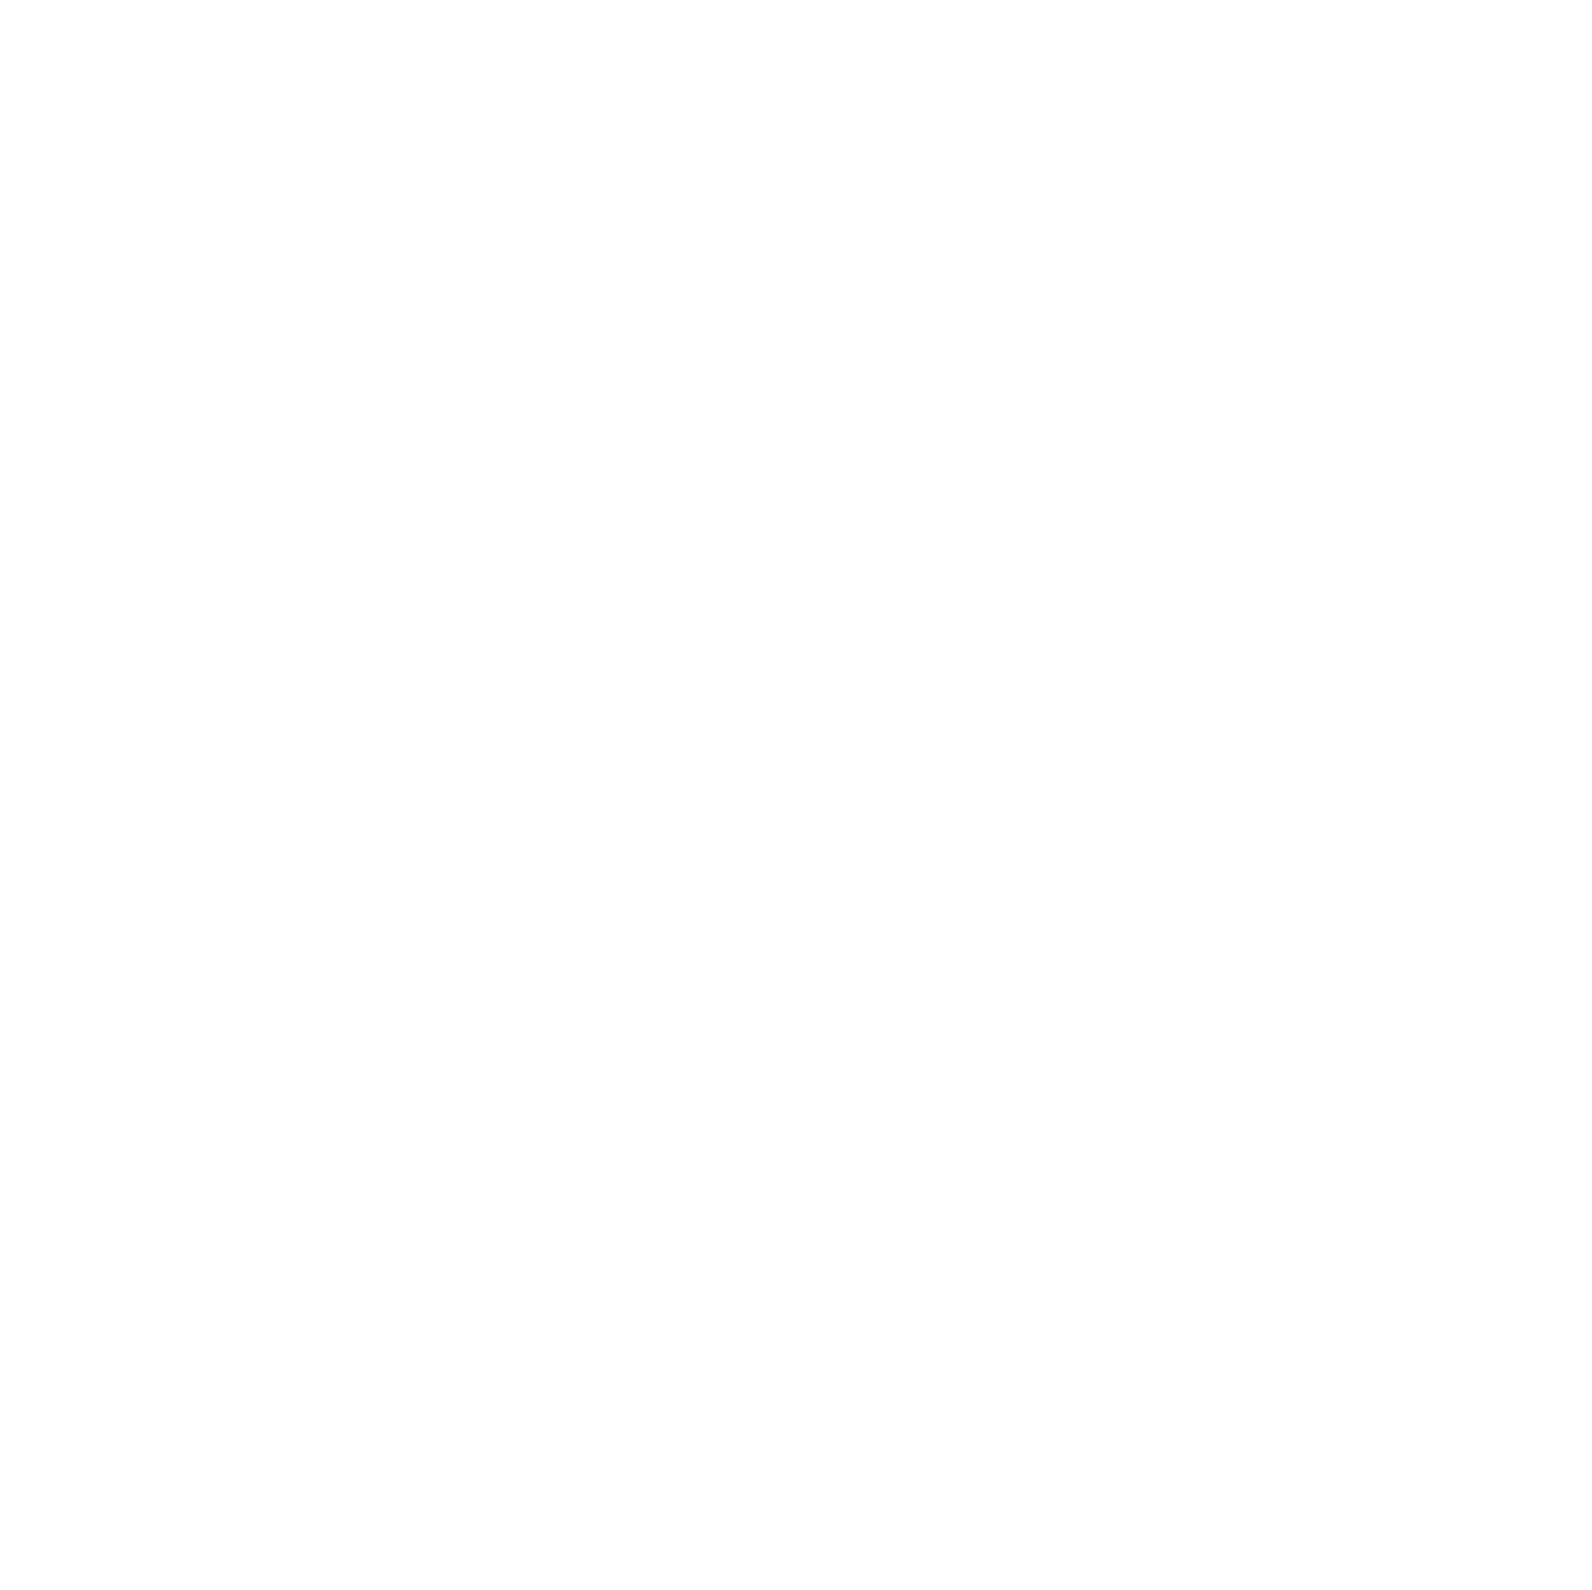 VF Corporation logo for dark backgrounds (transparent PNG)